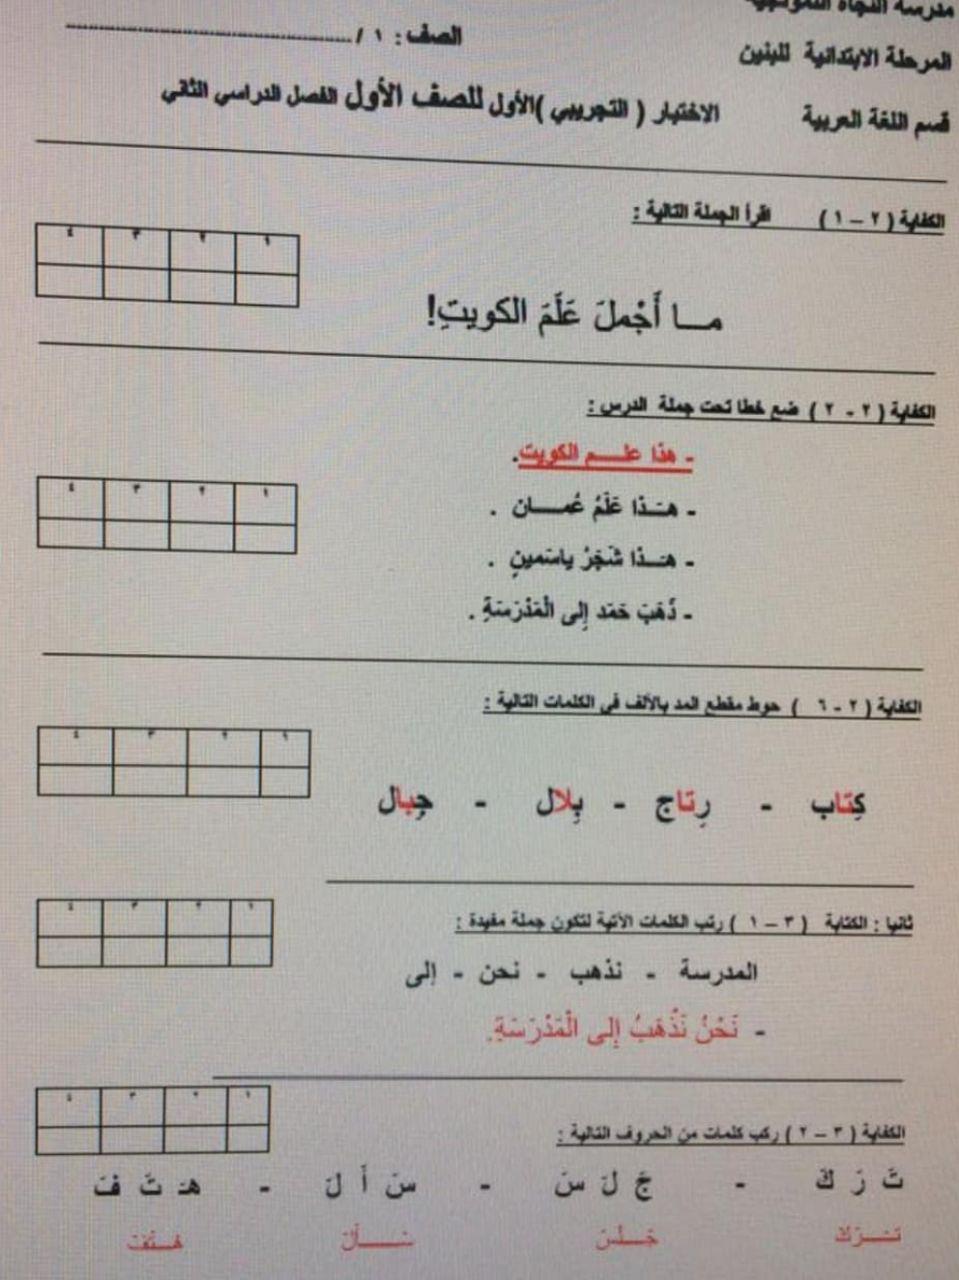 اختبار قصير عربي للصف الاول الفصل الثاني مدرسة النجاة النموذجية 2017-2018